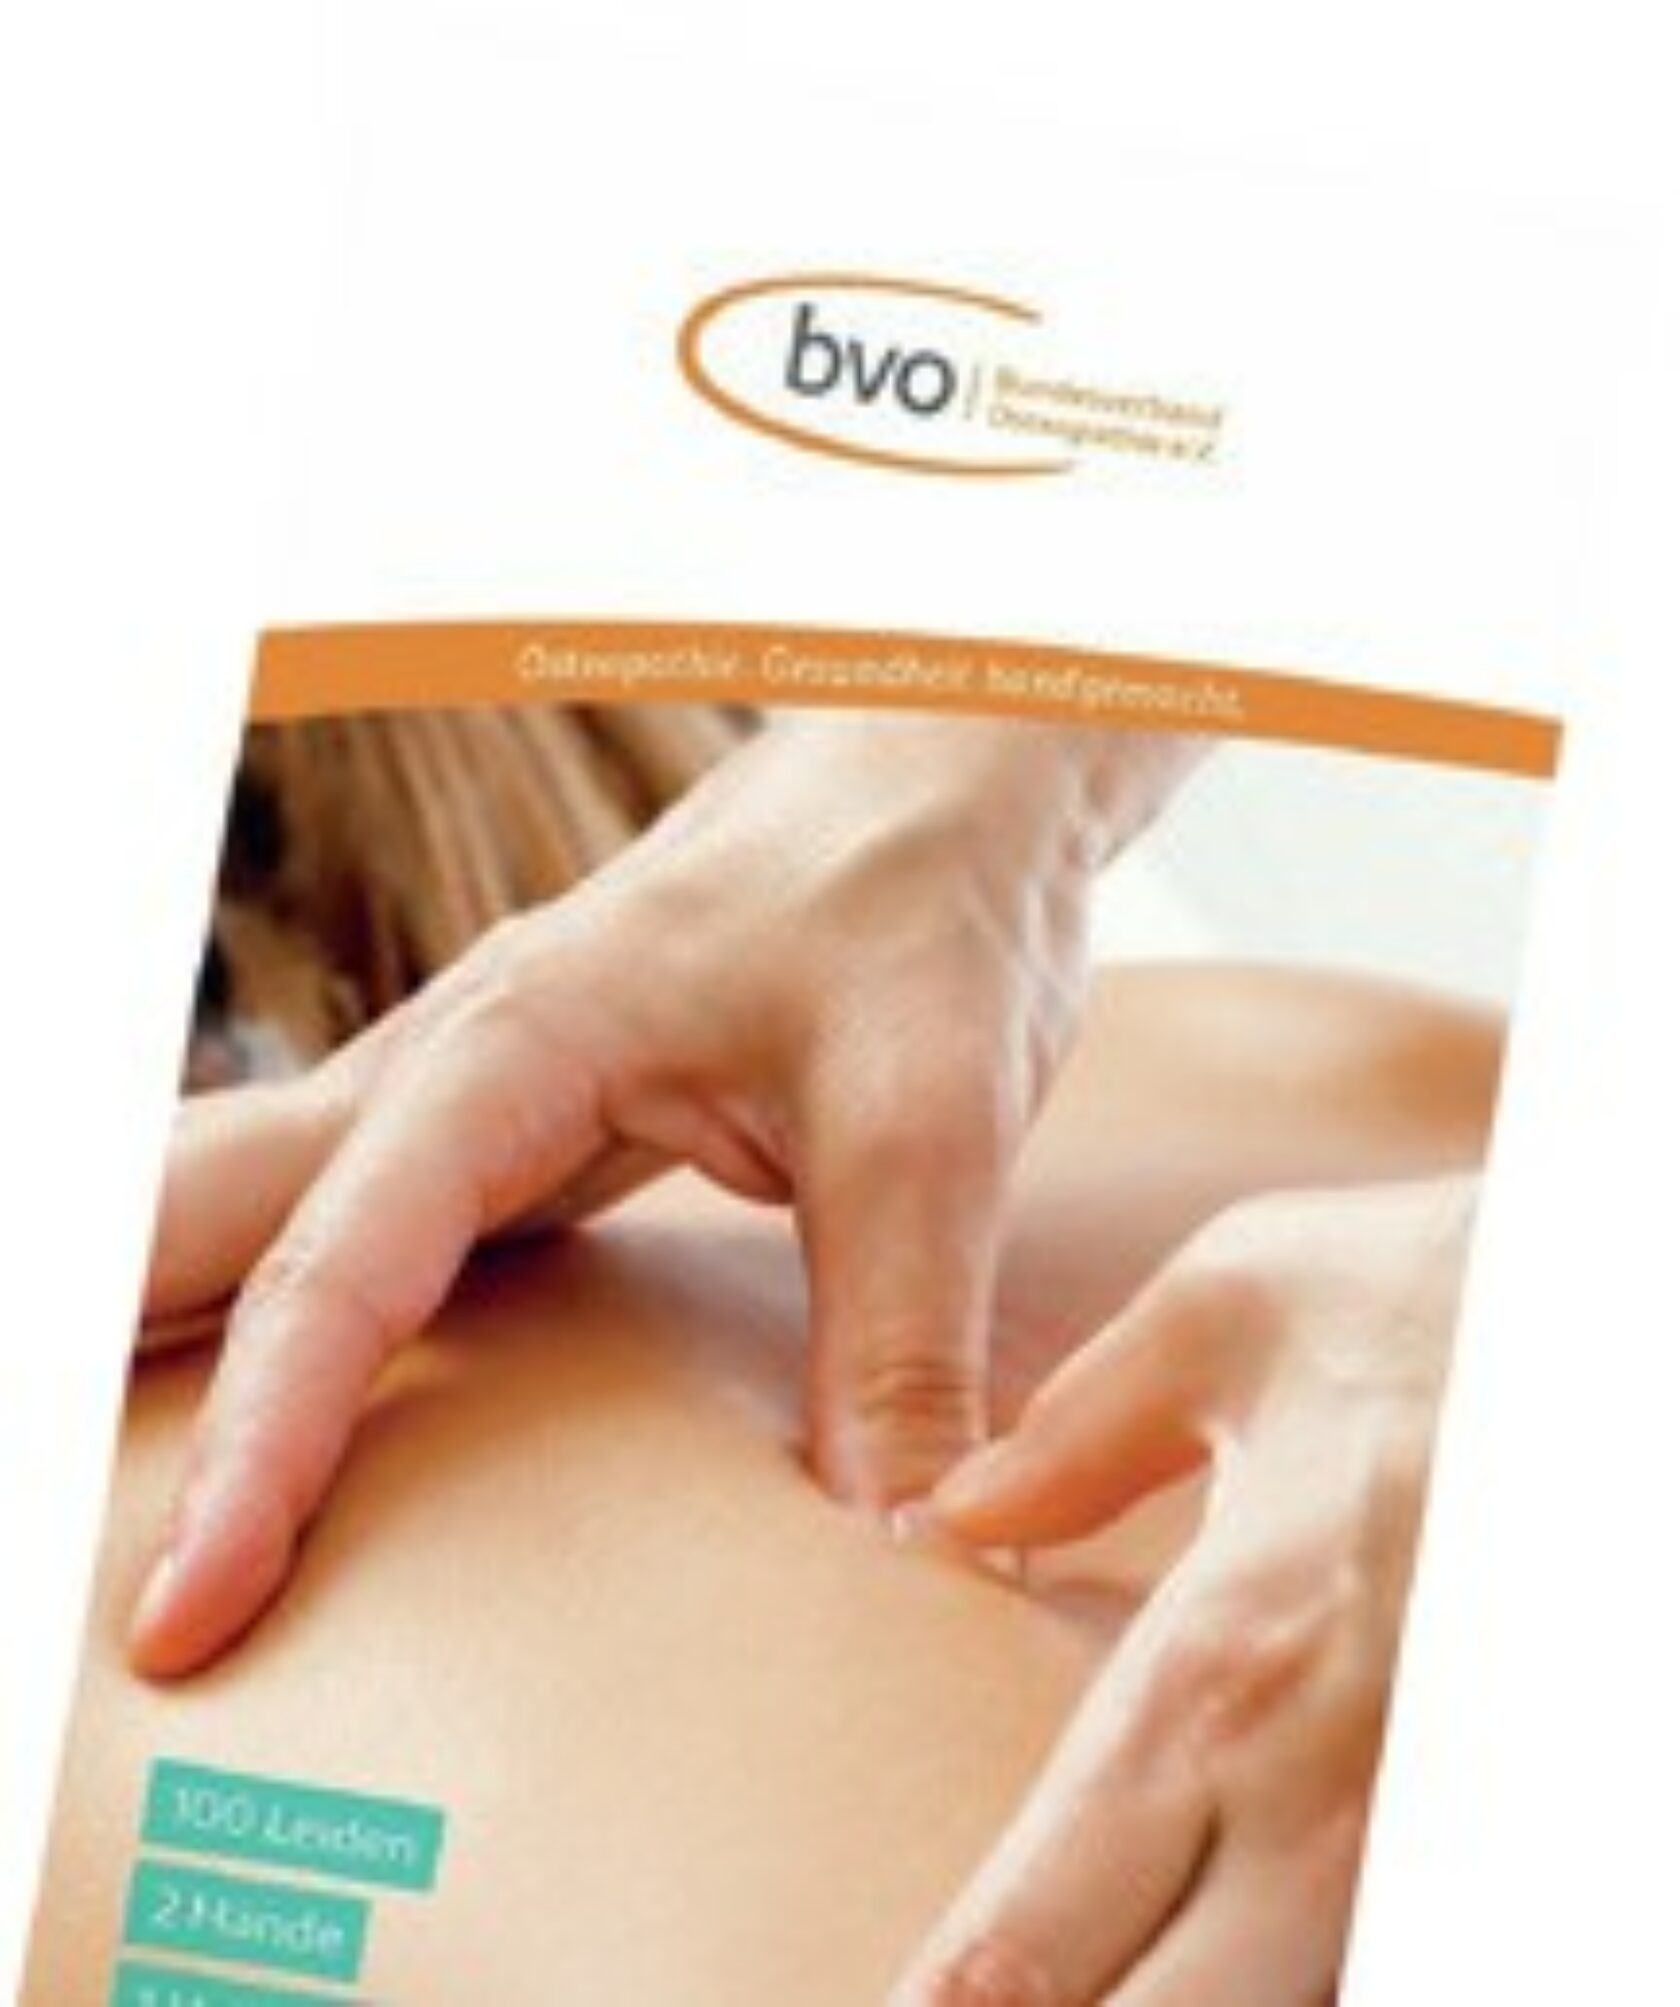 Handbuch zur osteopathischen Therapie vom BVO